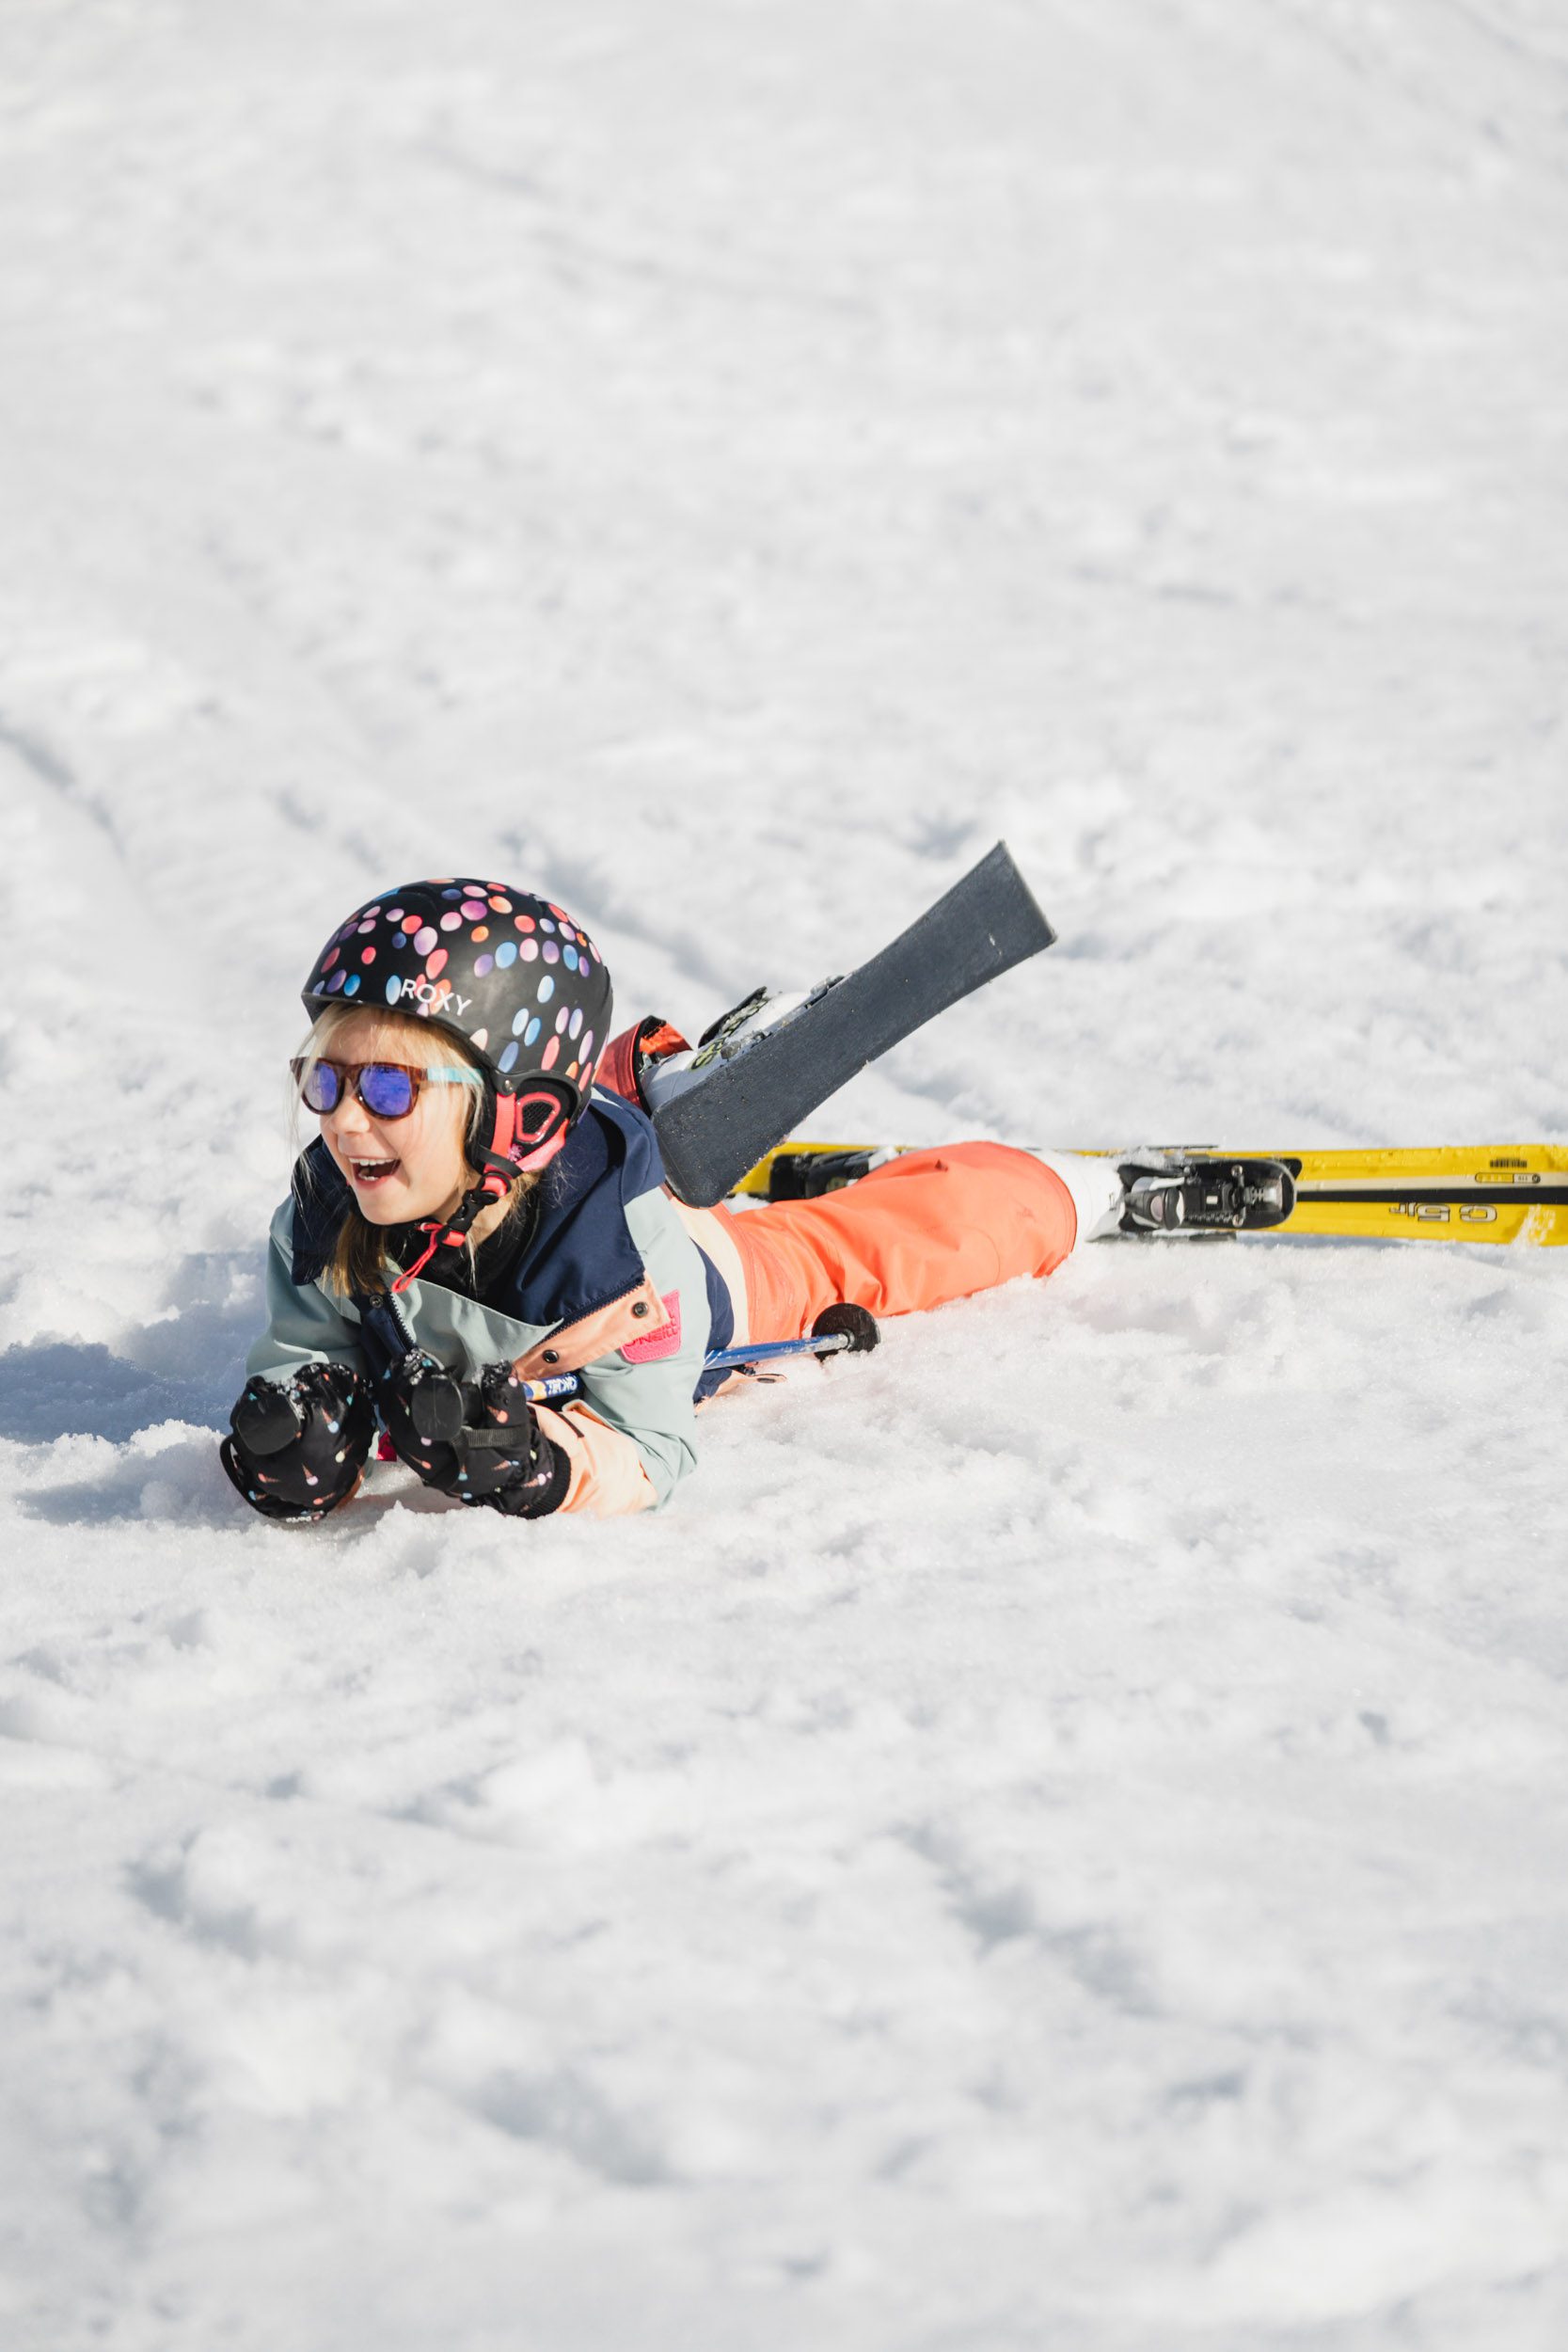 Skivakantie met kinderen: Frankrijk, Italië of Oostenrijk